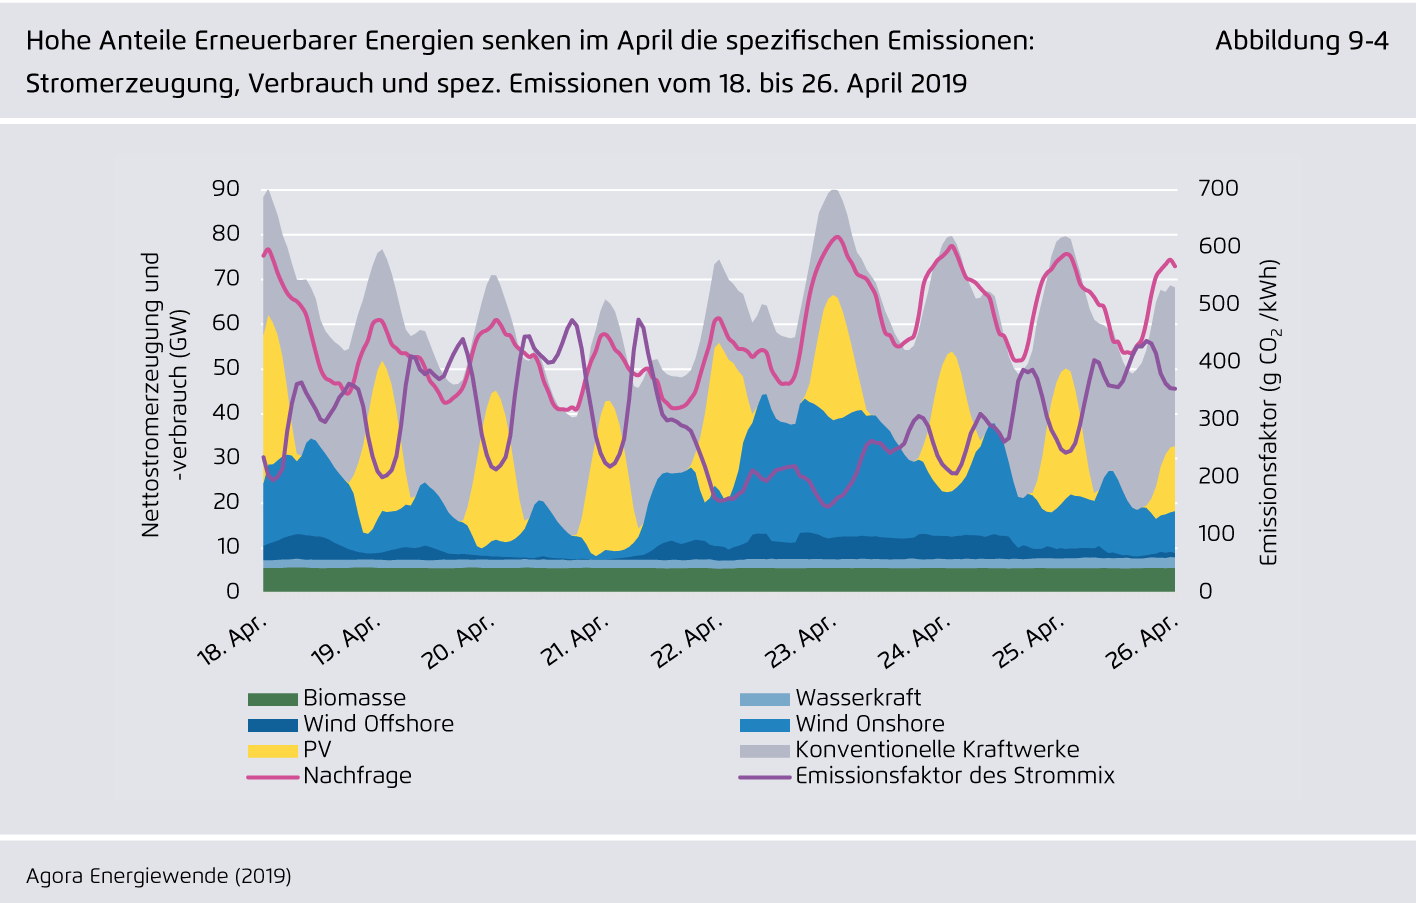 Preview for Hohe Anteile Erneuerbarer Energien senken im April die spezifischen Emissionen: Stromerzeugung, Verbrauch und spez. Emissionen vom 18. bis 26. April 2019